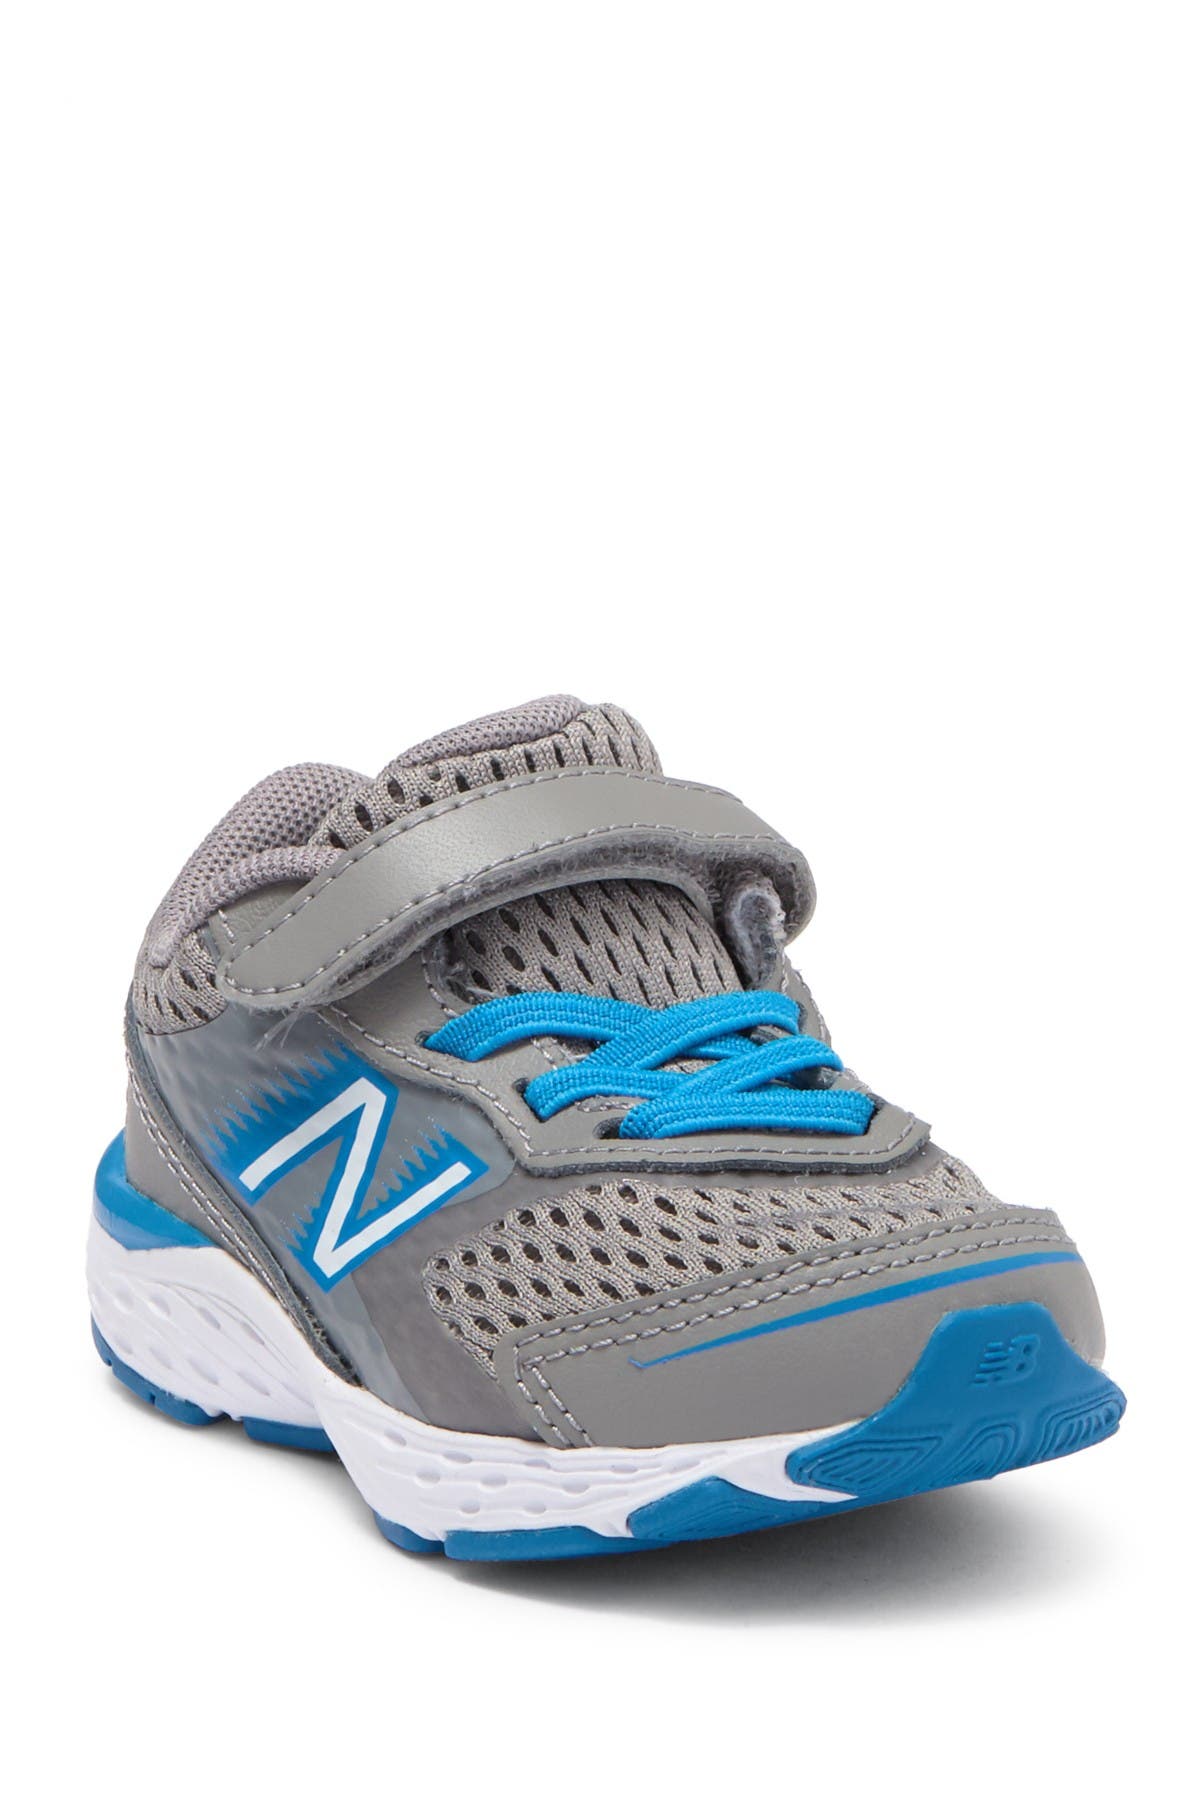 New Balance | 680v6 Sneaker | Nordstrom 